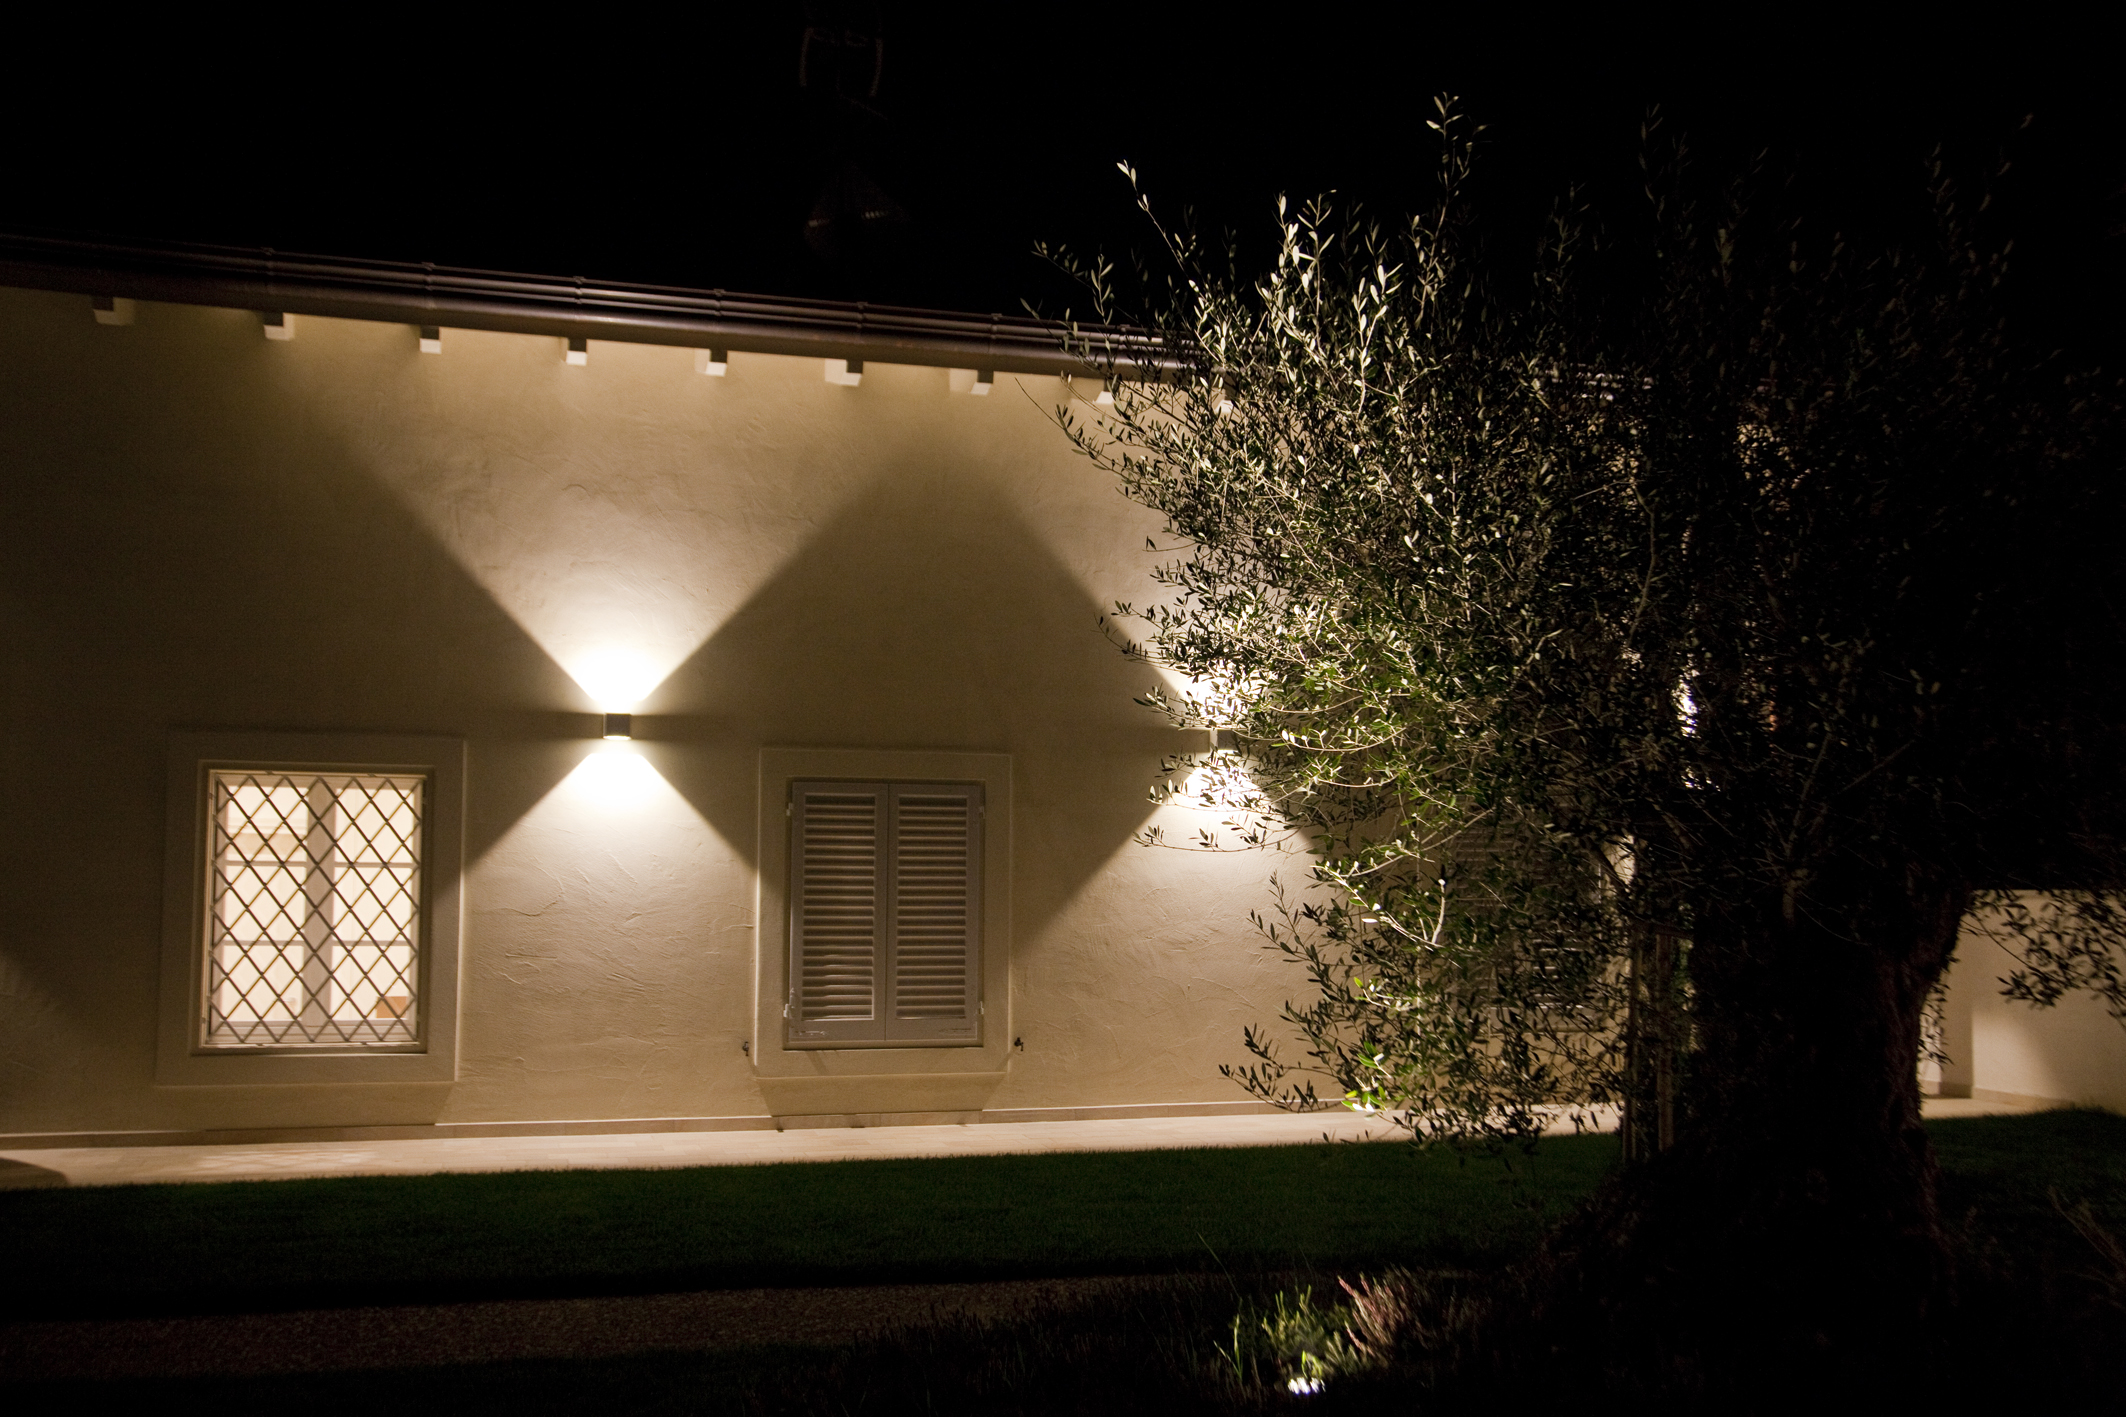 Eclairage architectural extérieur : Feilo Sylvania ouvre la voie à de nouvelles perspectives